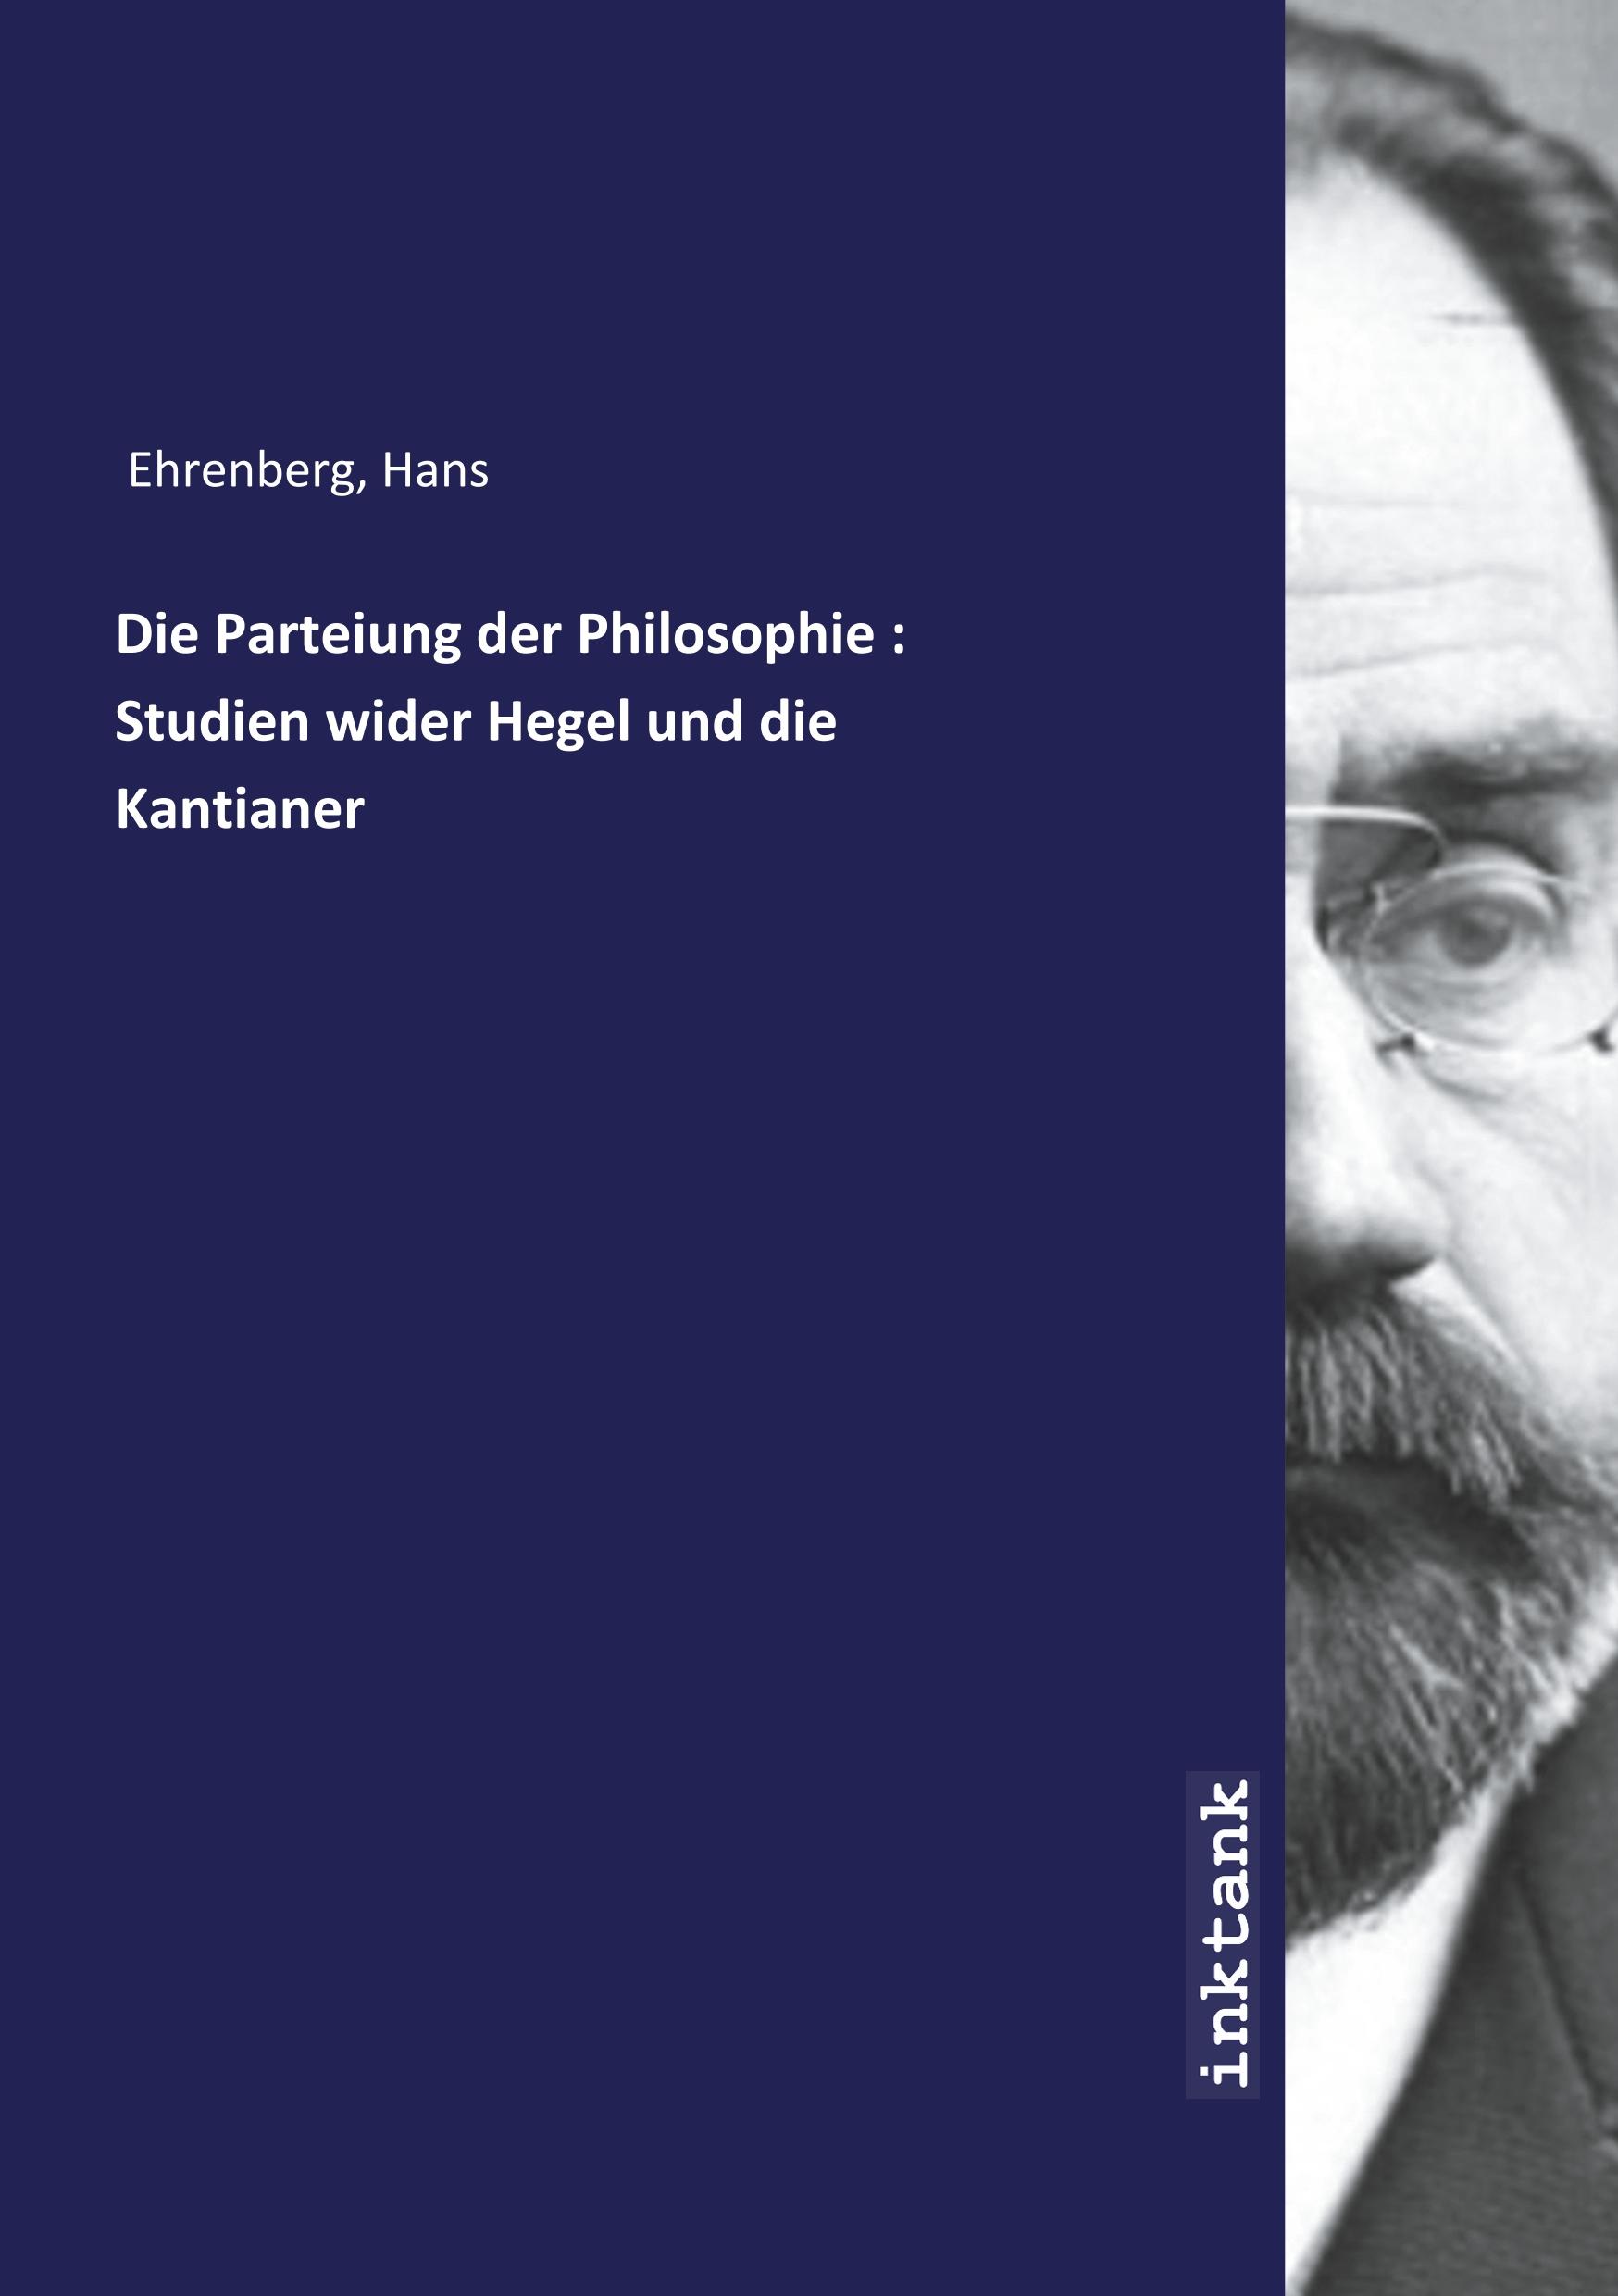 Die Parteiung der Philosophie : Studien wider Hegel und die Kantianer - Ehrenberg, Hans